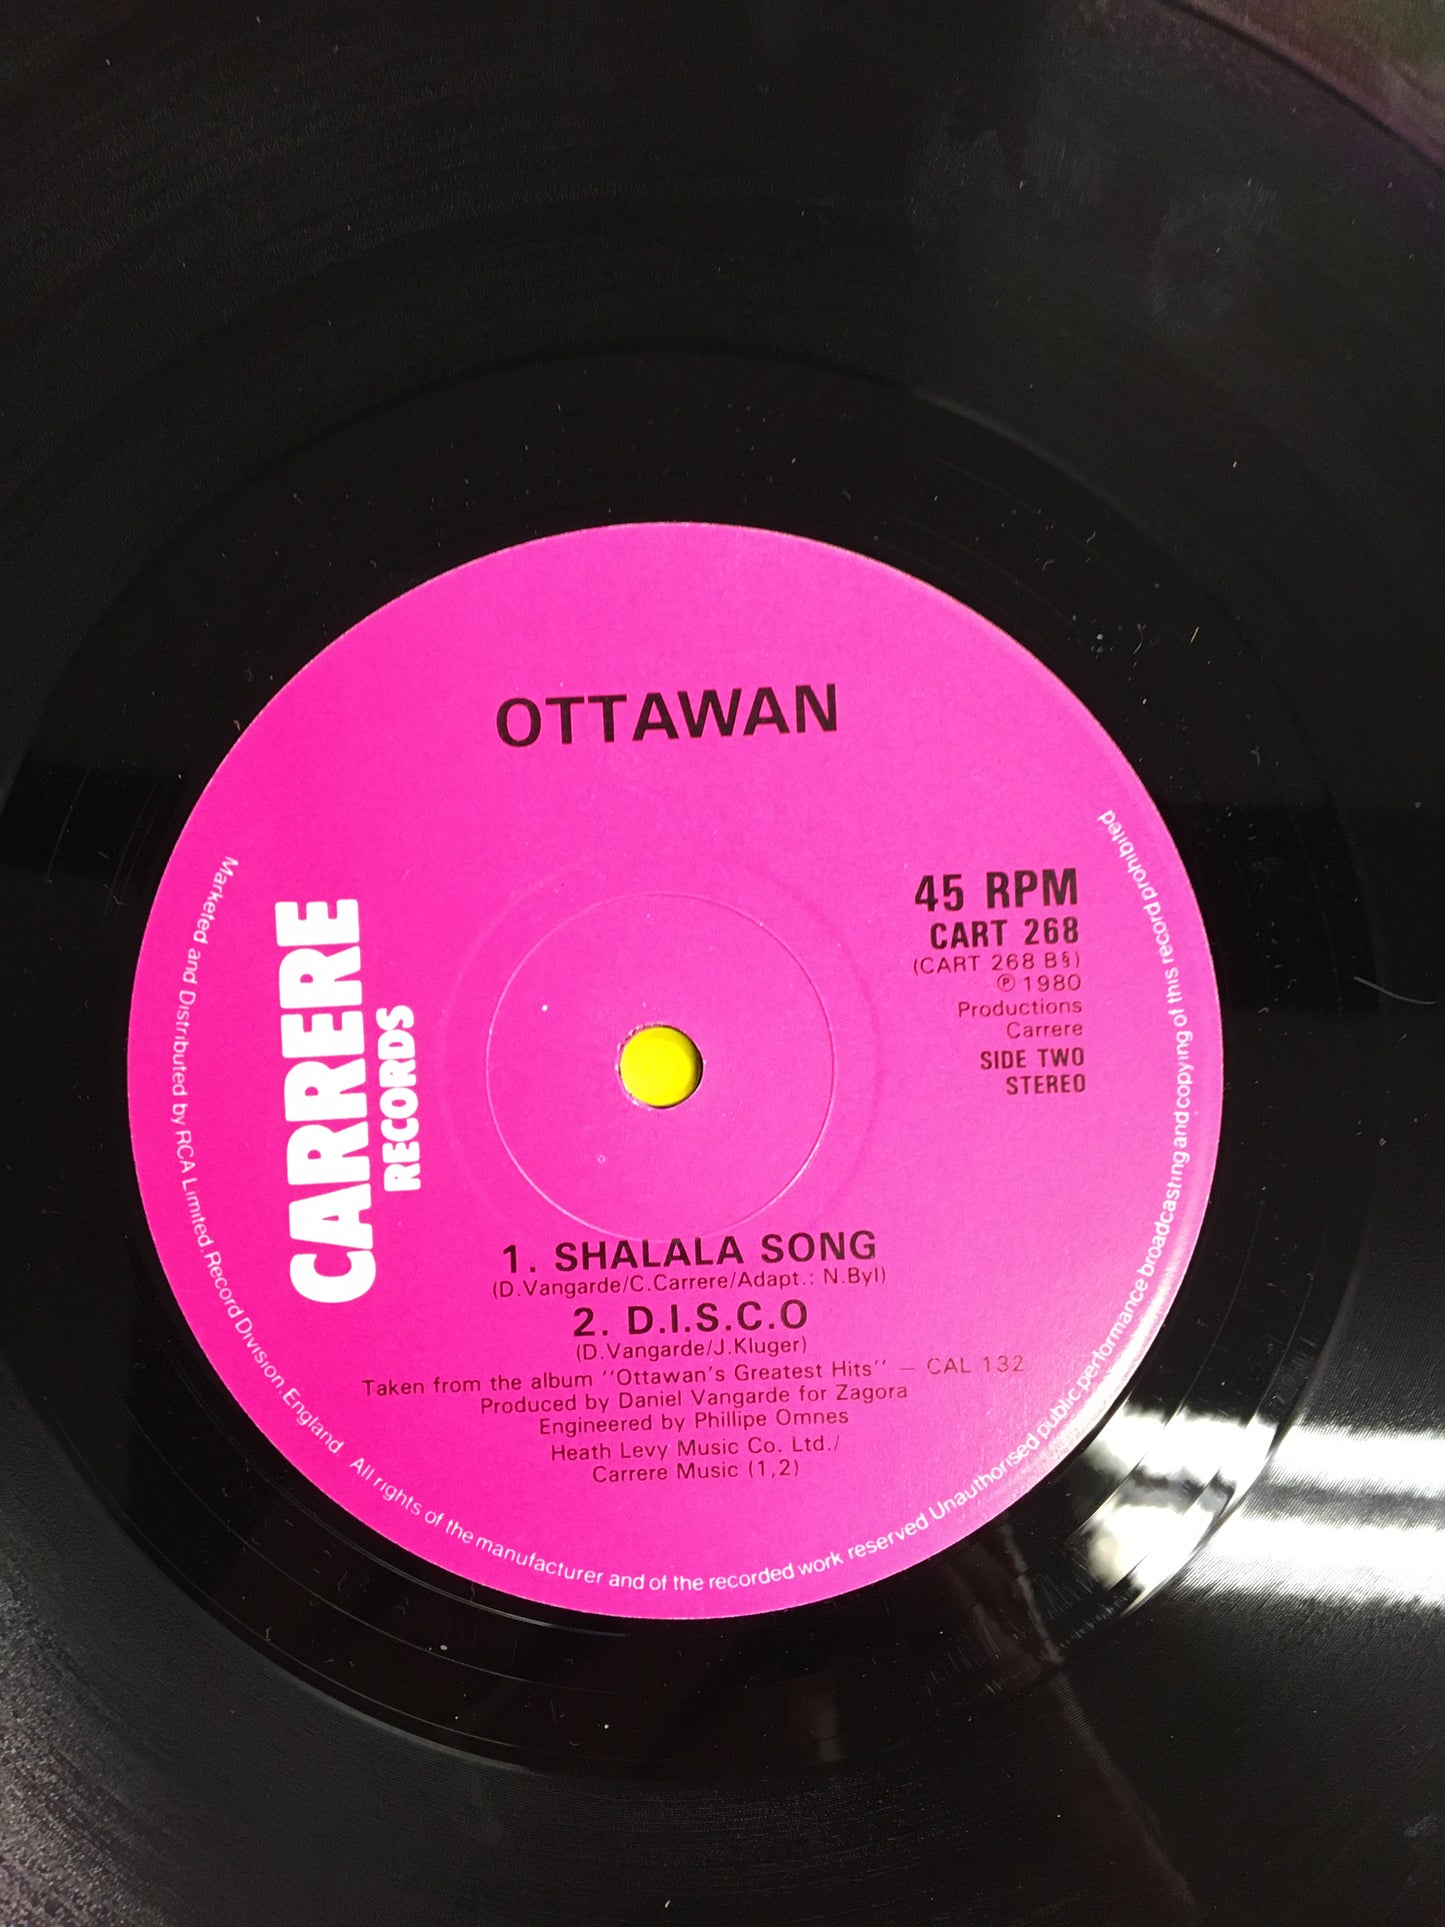 OTTAWAN 12” CRAZY MUSIC ( Extended Version )